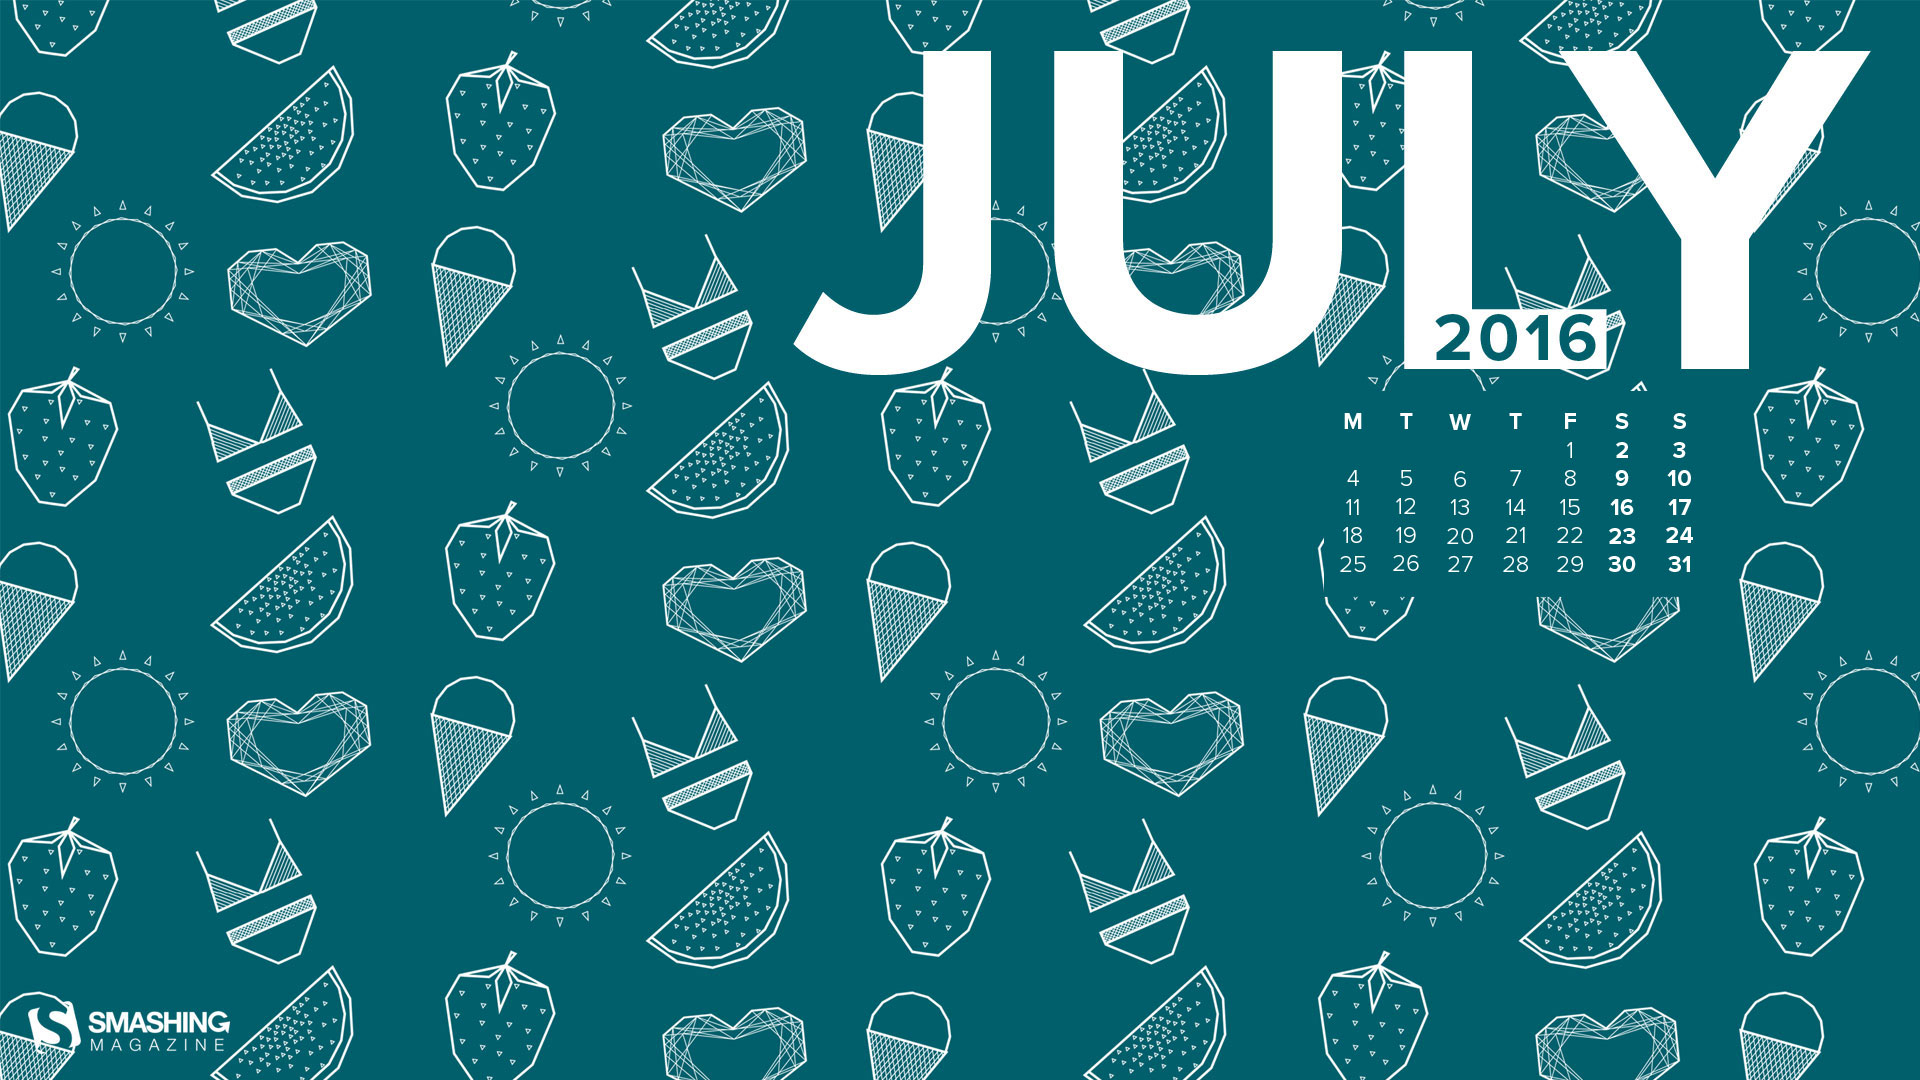 Desktop Wallpaper Calendar  Iulie 2016 Touchofadream intended for Calendar De Frumusete